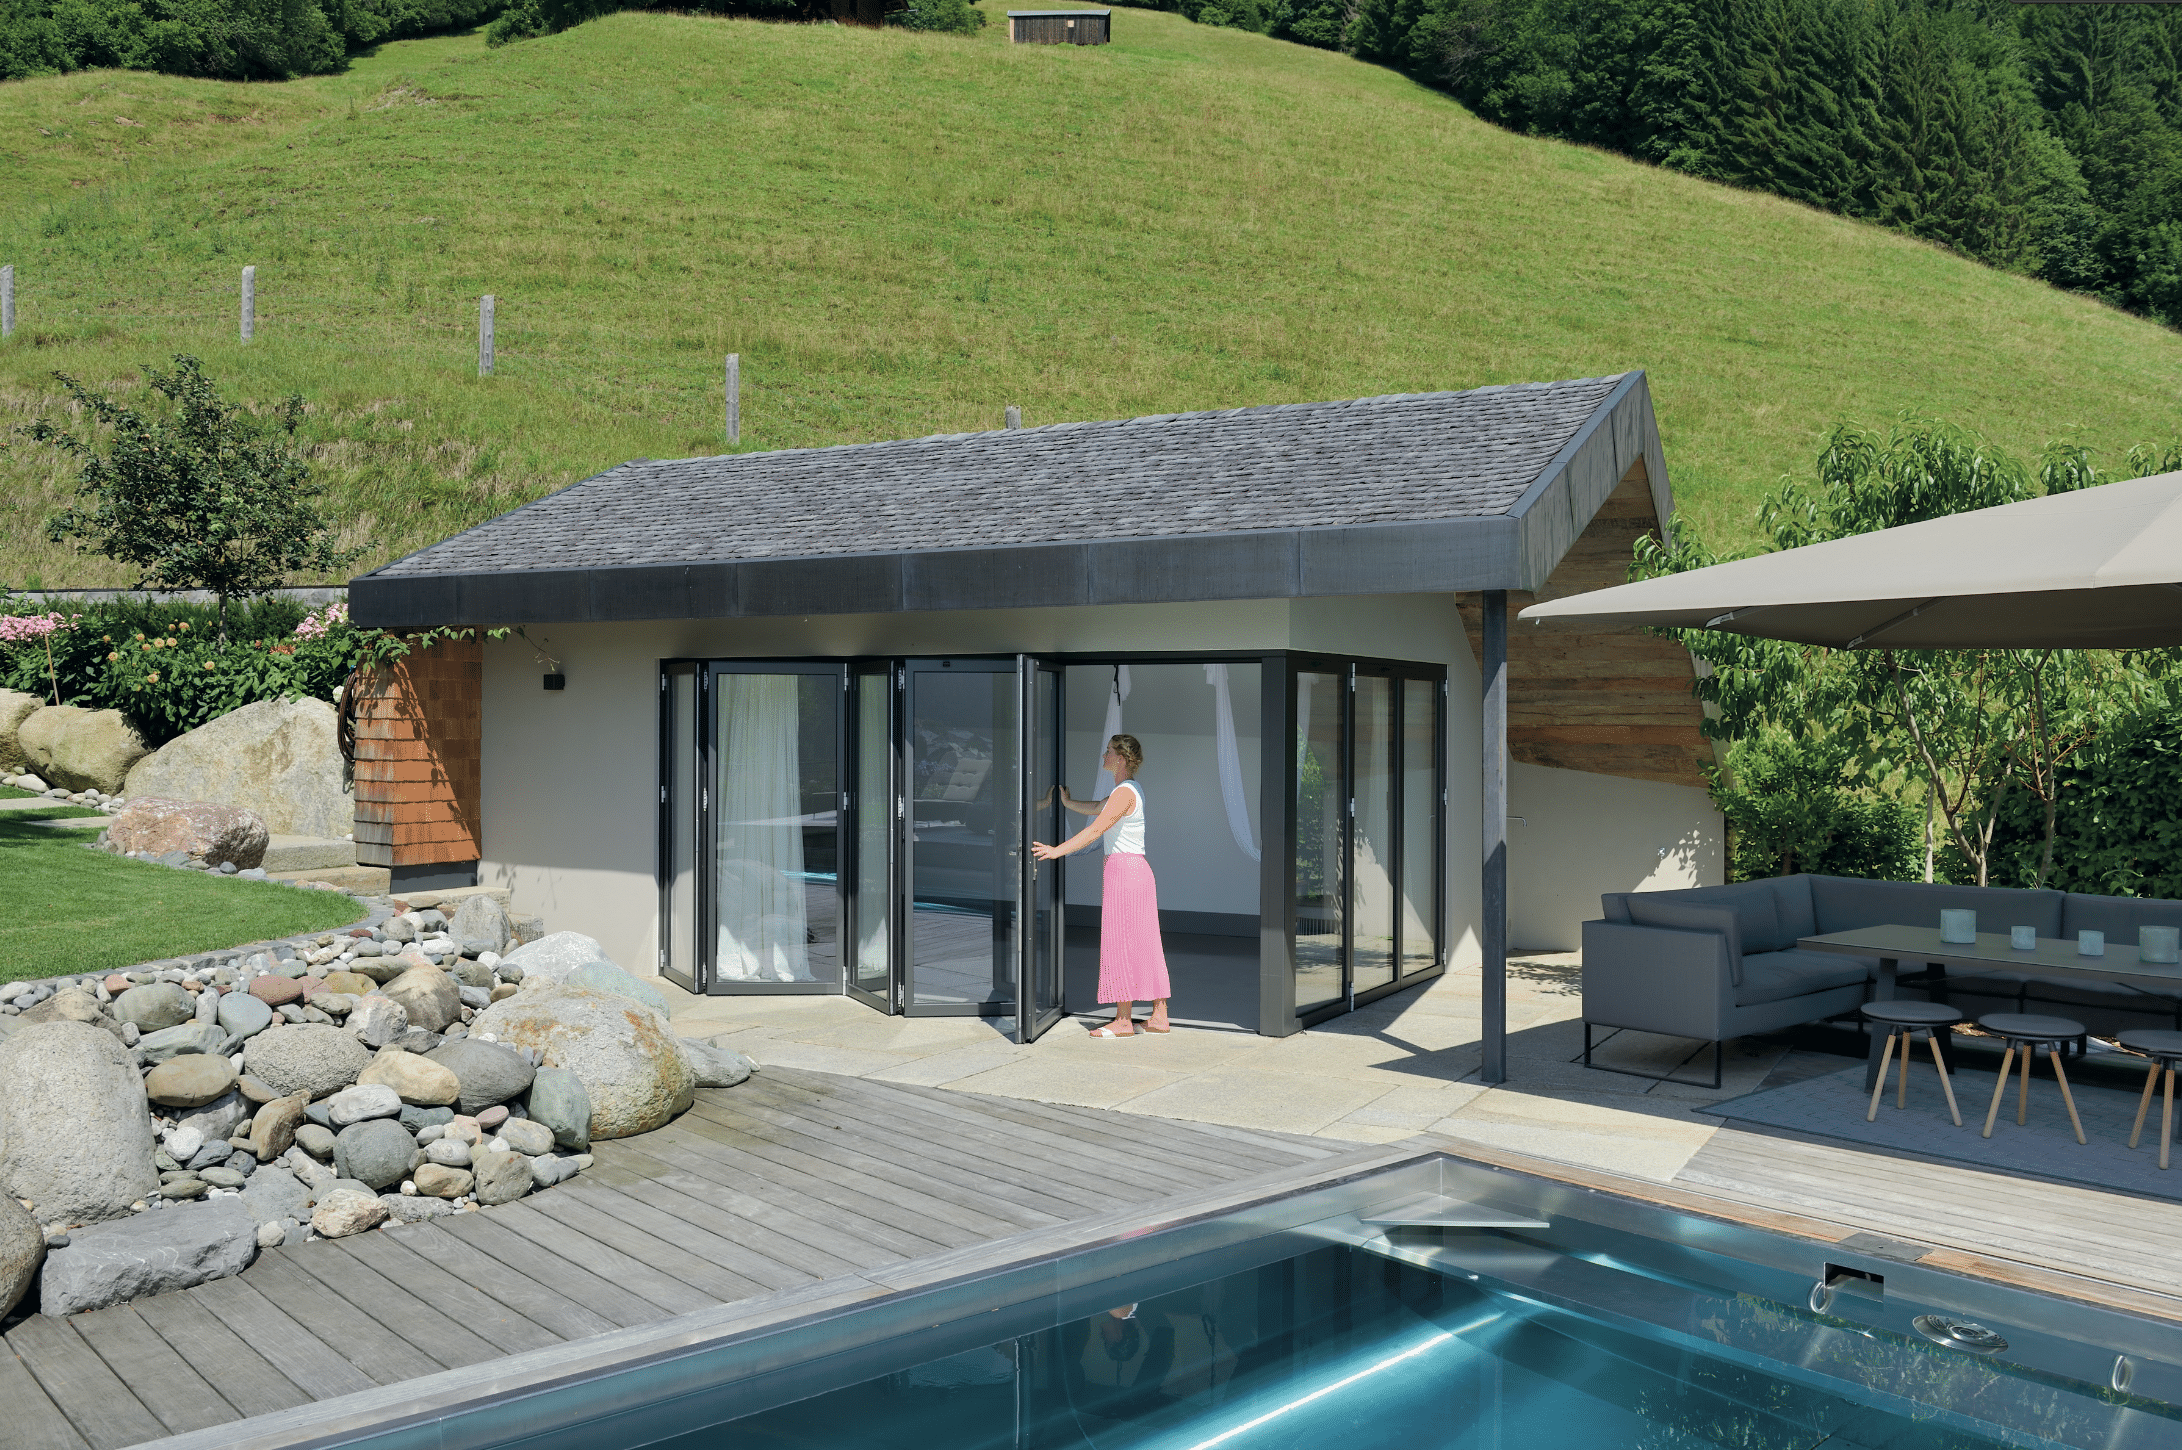 Junge Frau öffnet die moderne Glasfaltwand von Solarlux am modernen Poolhaus und exklusivem Edelstahlbecken mit Terrassenumrandung aus Holz in herrlicher Naturlandschaft.